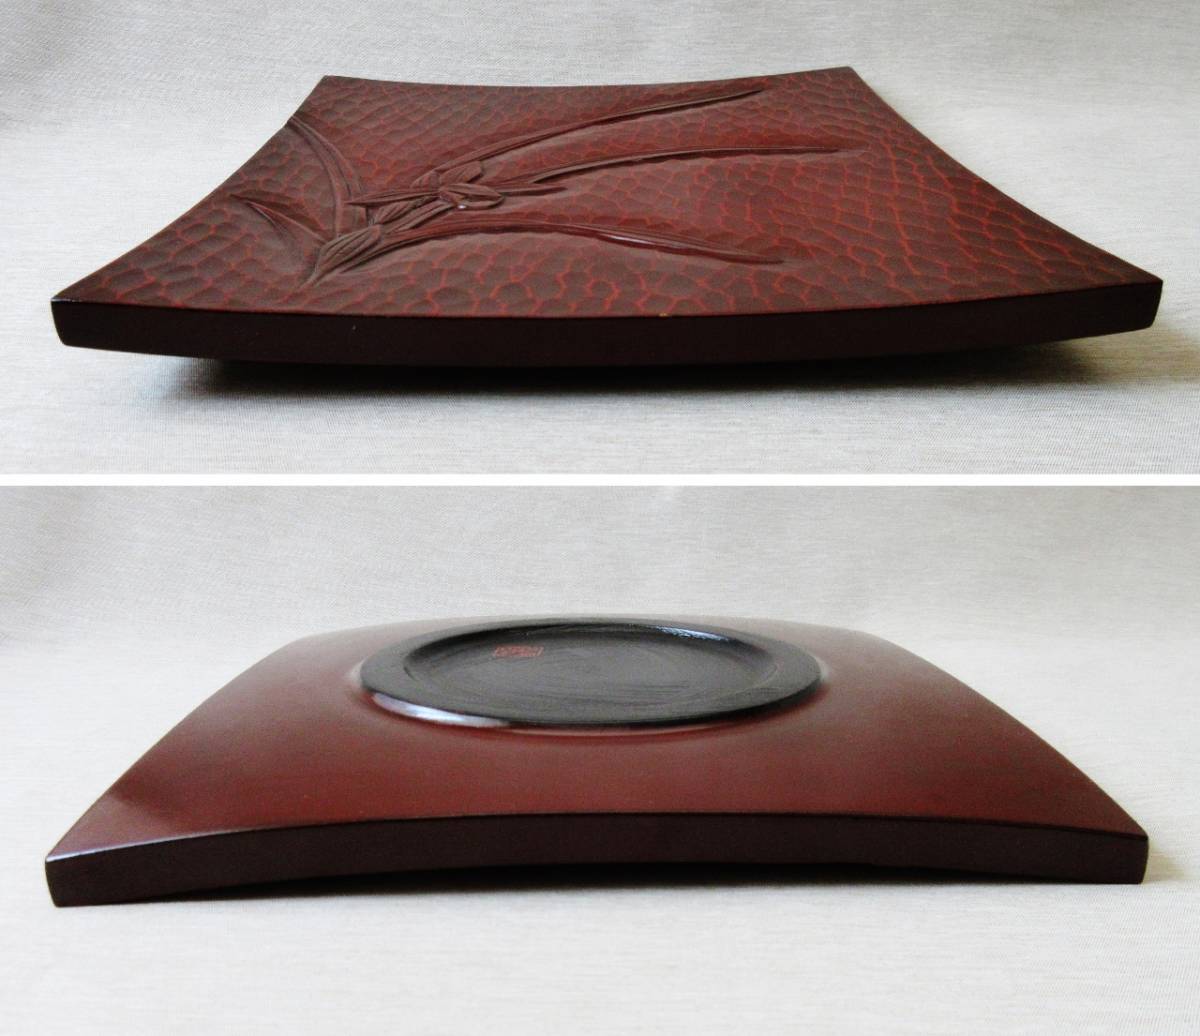 ハンドメイド鎌倉彫【陽堂】水仙24.3cm角皿 底は丸型_側面板の厚み1.3cm有ります